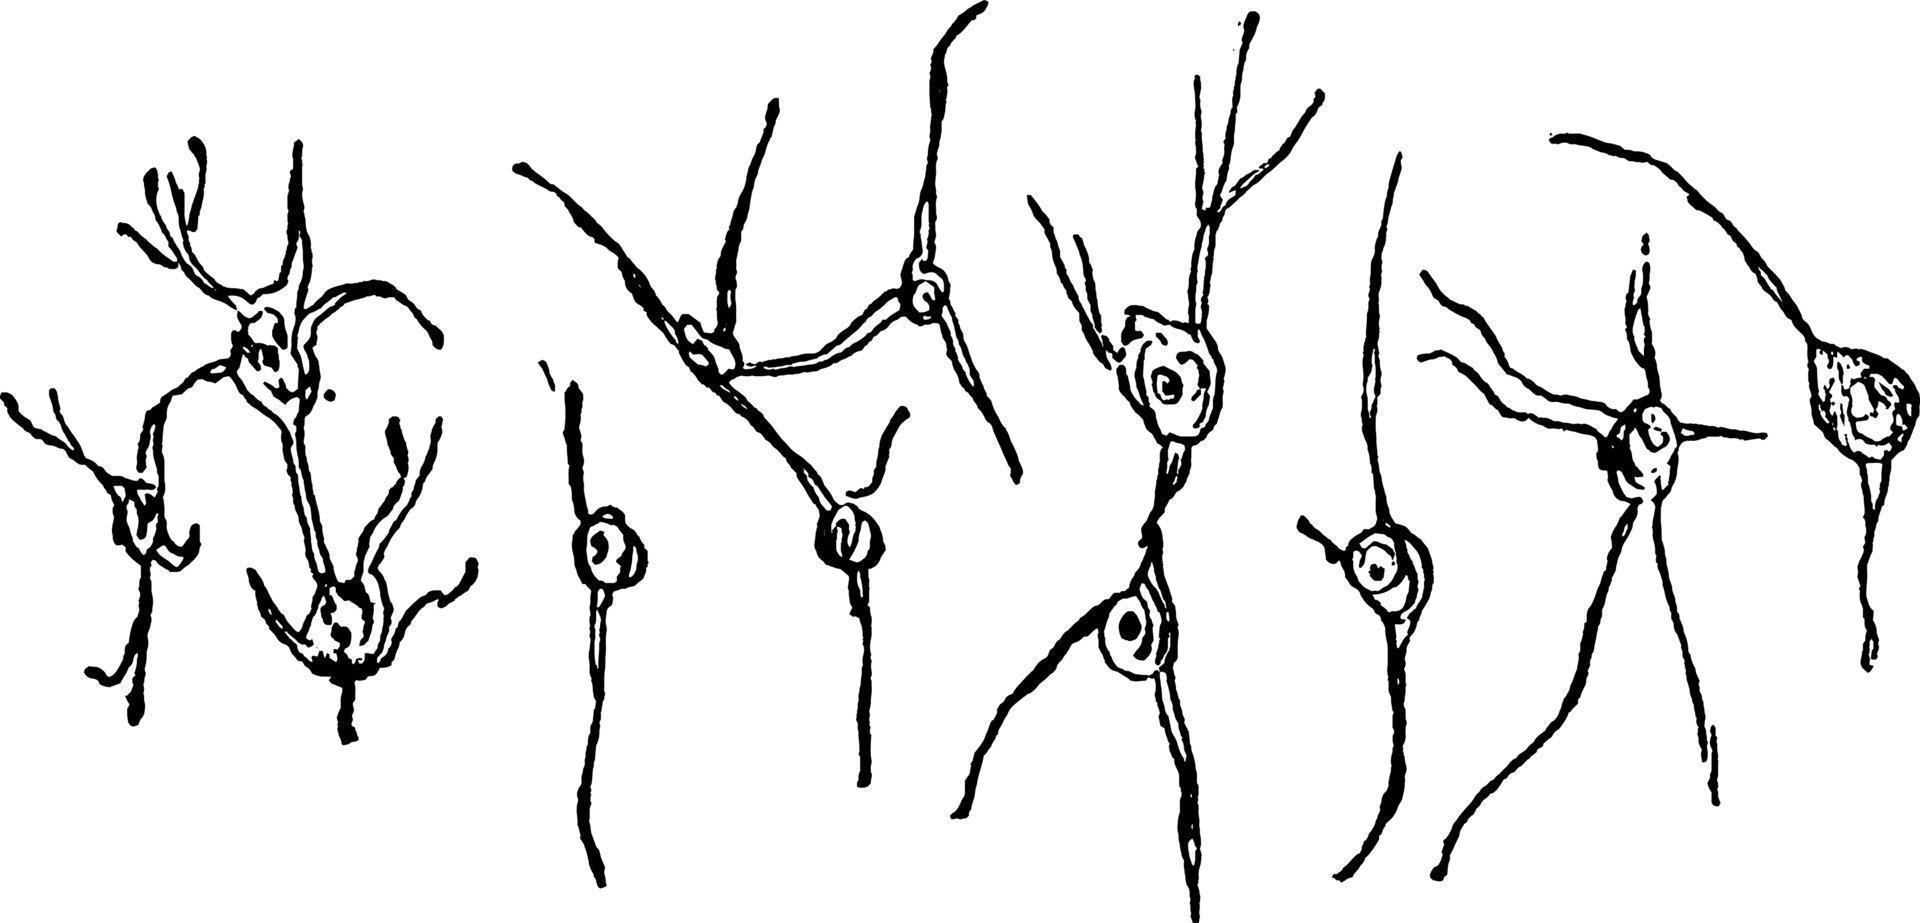 cellules nerveuses, illustration vintage. vecteur